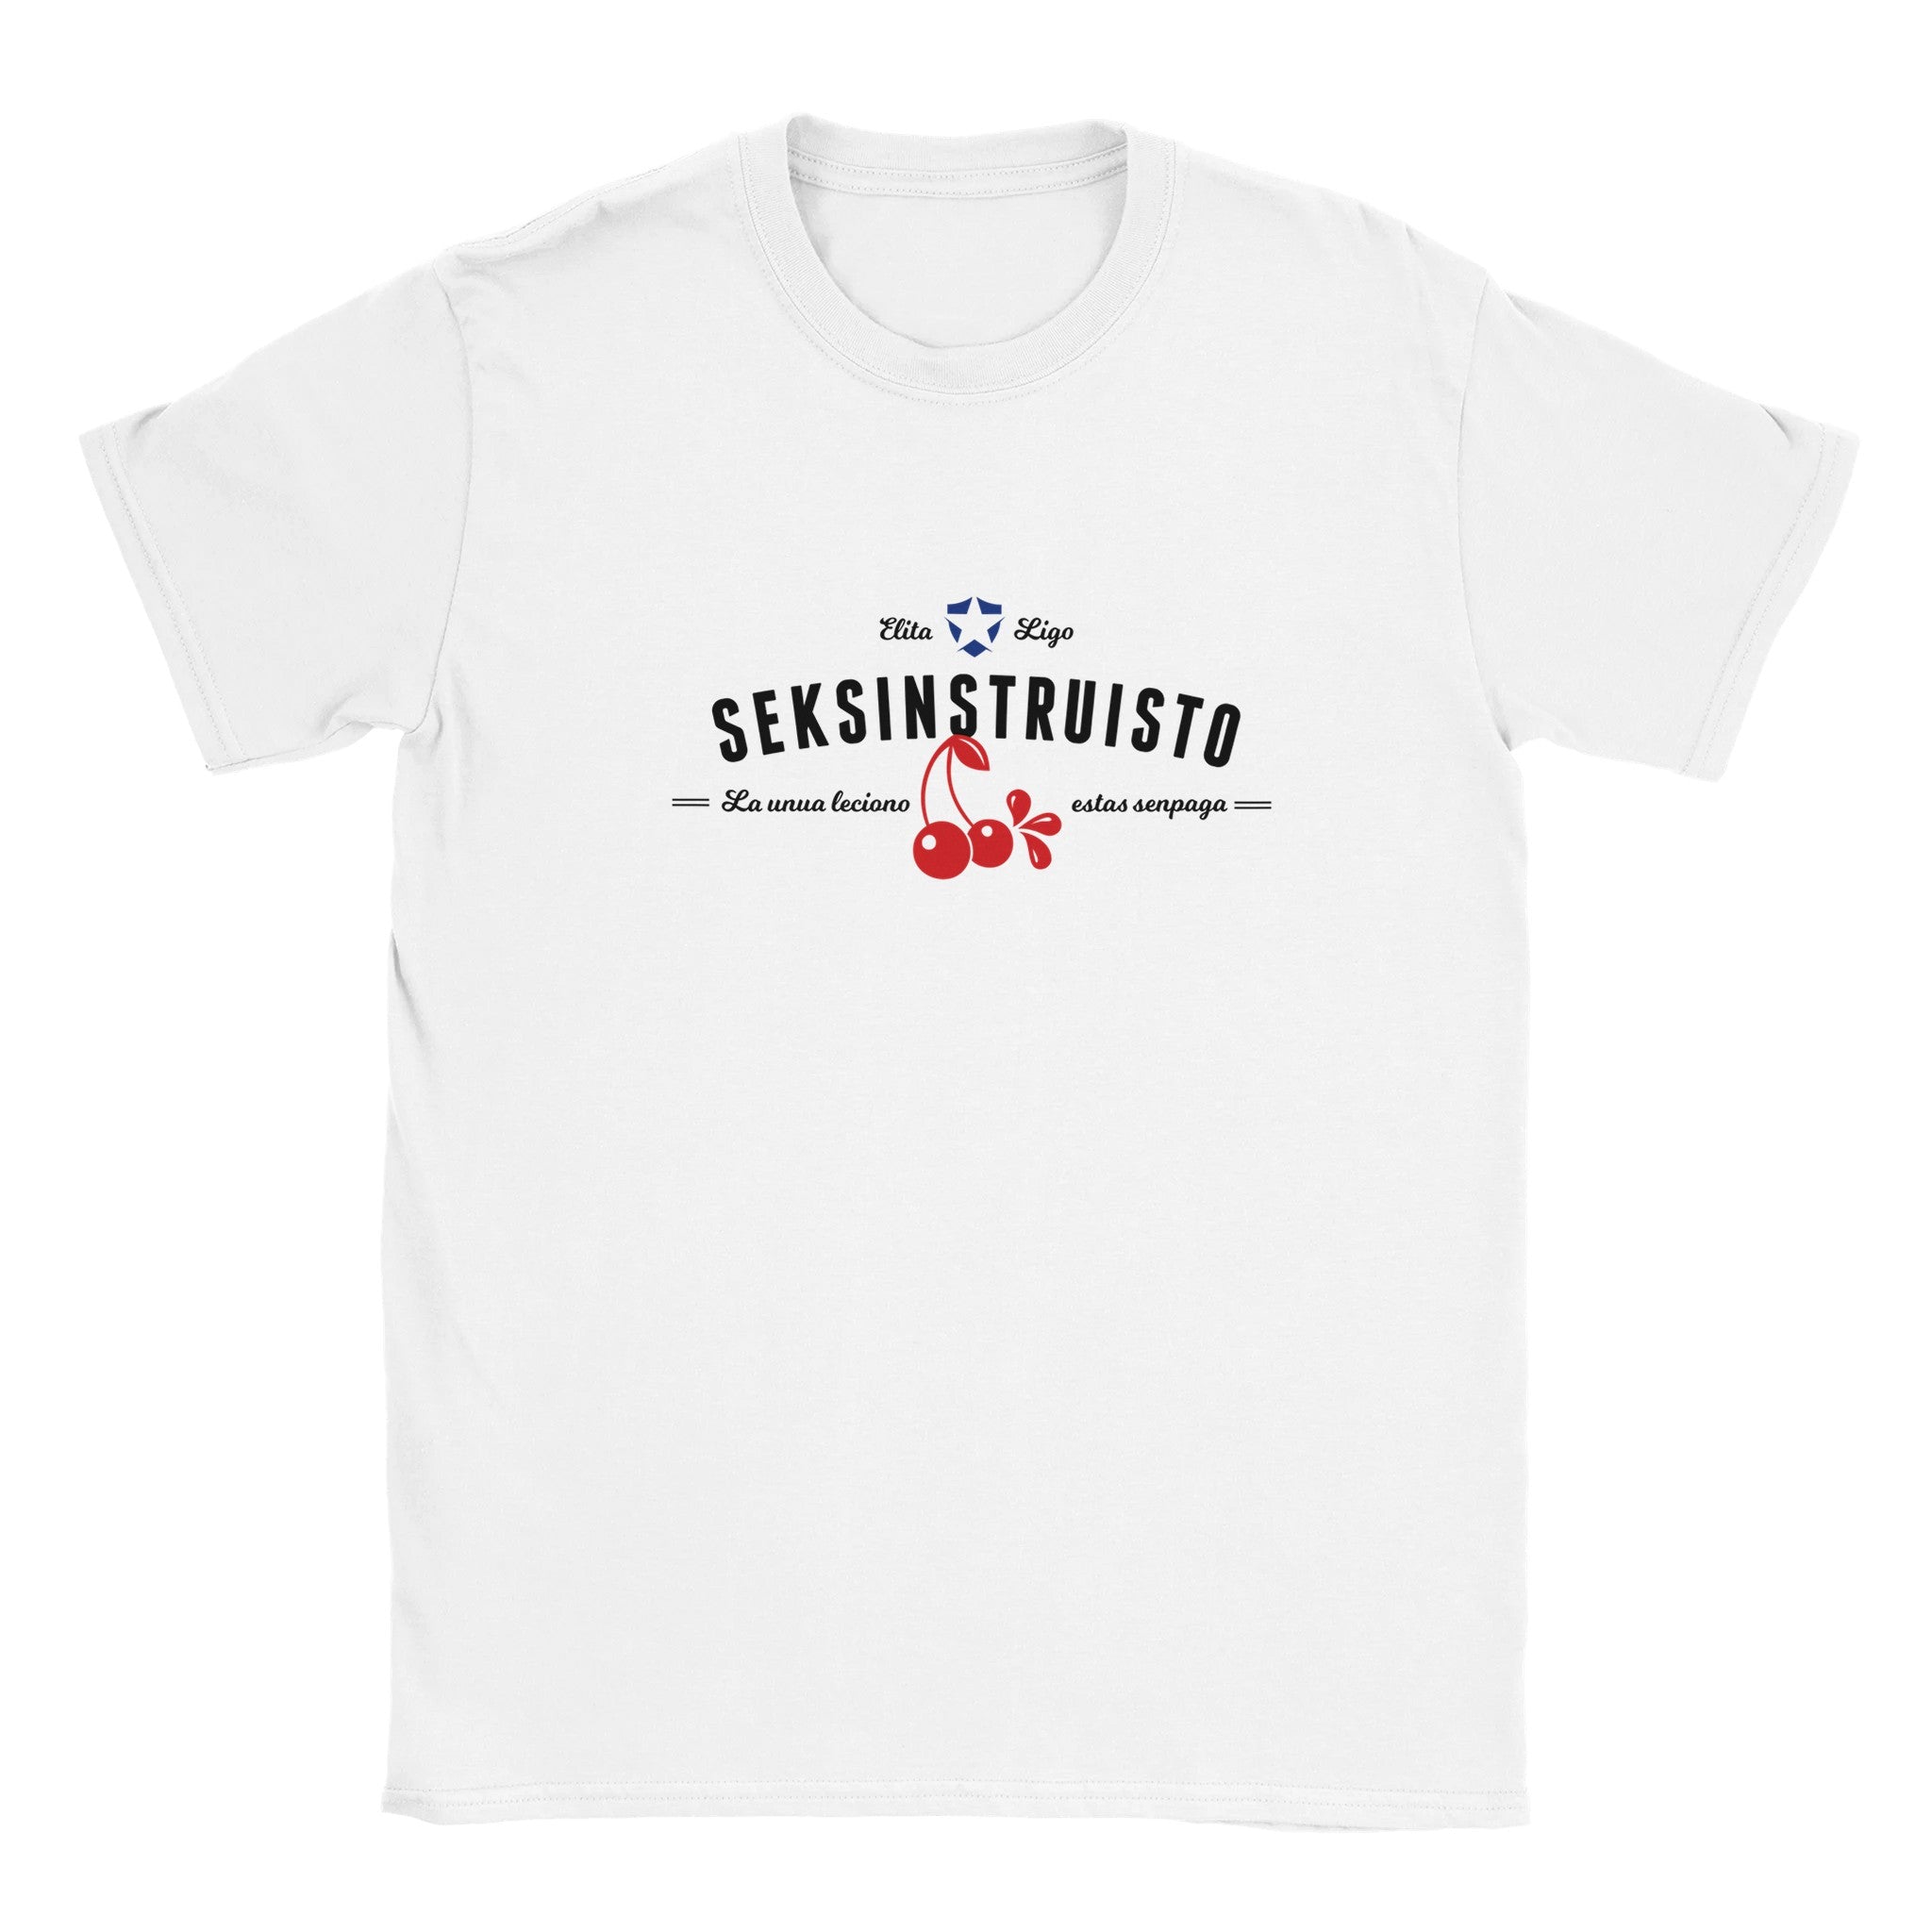 Seksinstruisto Unisex T-shirt